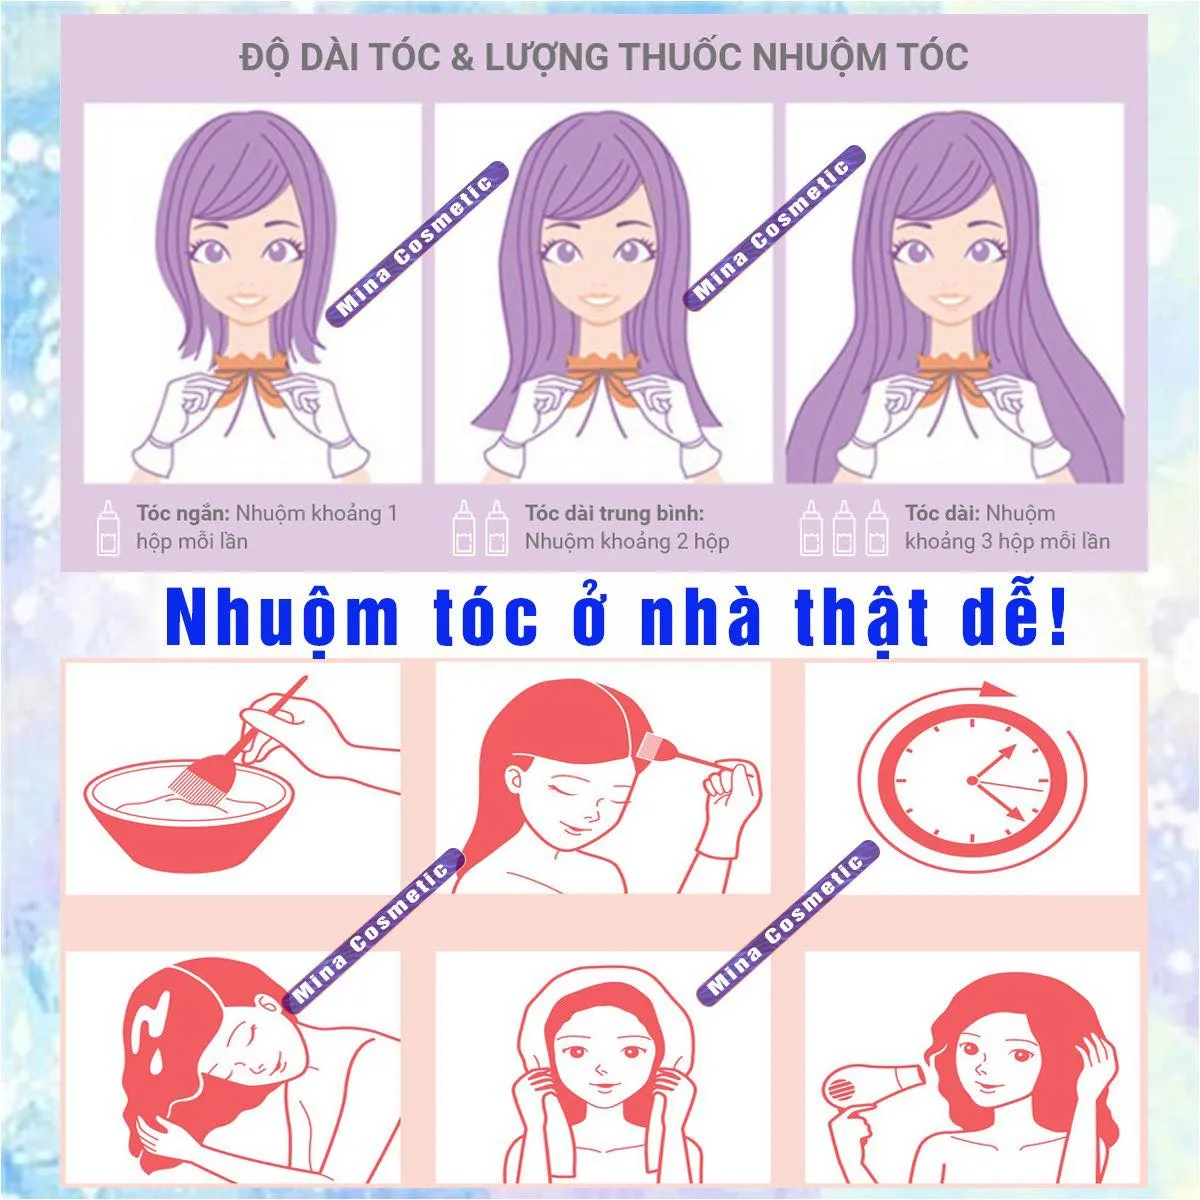 Tóc hidden bạch kim là một xu hướng tóc mới lạ ở Việt Nam. Với màu sắc tinh tế và độc đáo, bạch kim mang đến cho mái tóc của bạn sự nổi bật và cá tính. Những hình ảnh về tóc hidden bạch kim chắc chắn sẽ khiến bạn muốn thử nghiệm ngay.